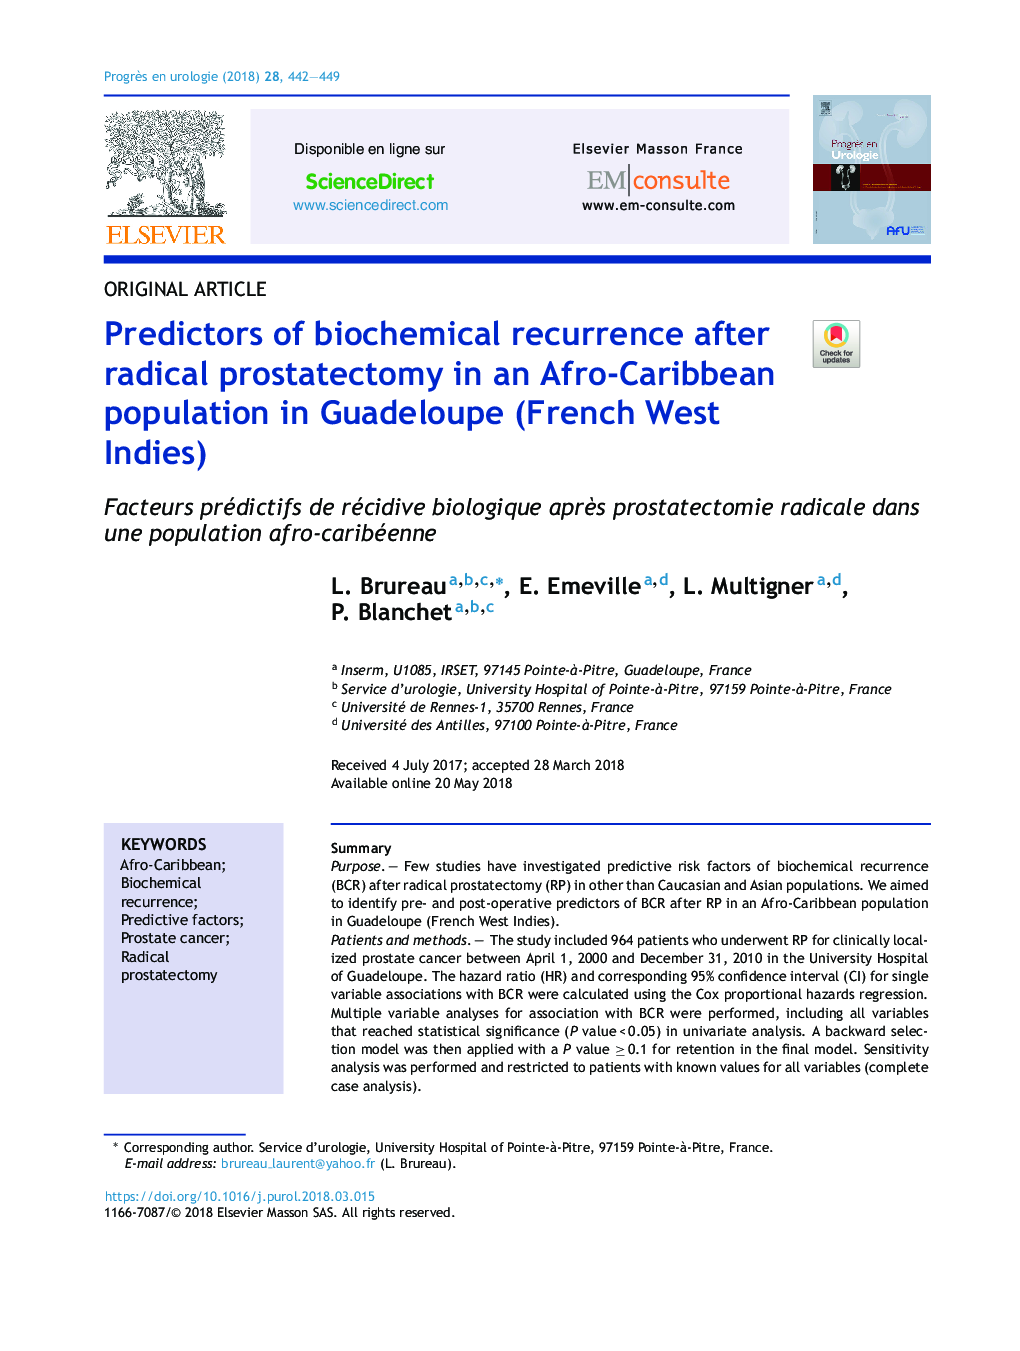 پیش بینی های عود بیوشیمیایی پس از پروستاتکتومی رادیکال در جمعیت آفریقایی-کارائیب در گوادلوپ (غرب اندی فرانسوی) 